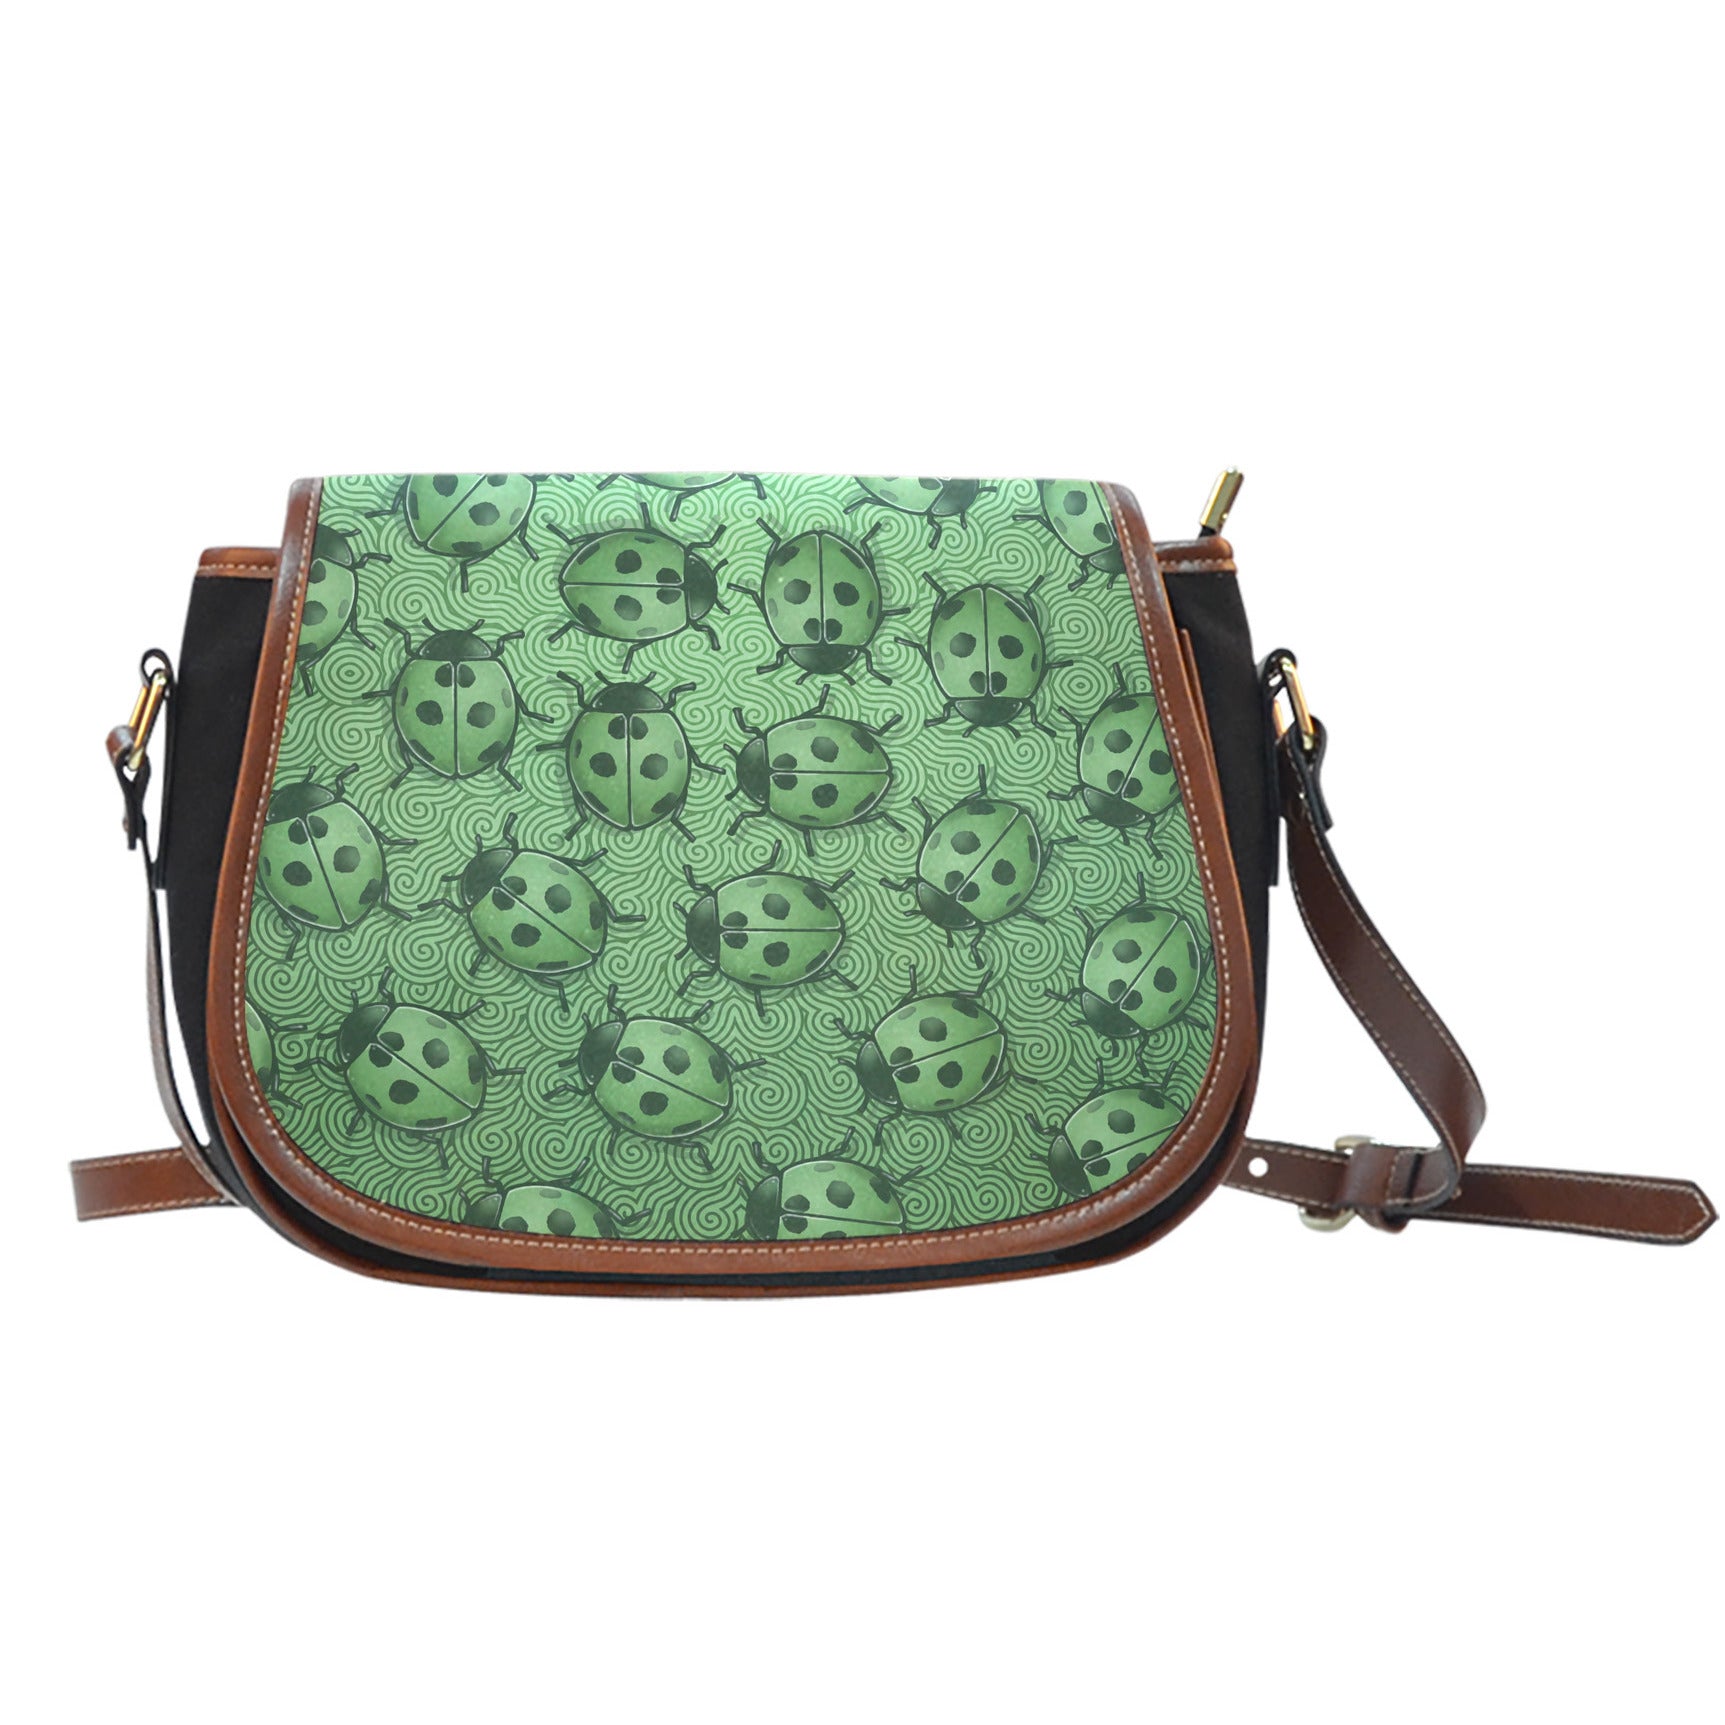 Lady Bug Swirl Black Canvas Saddle Bag - Green w/Leather Trim